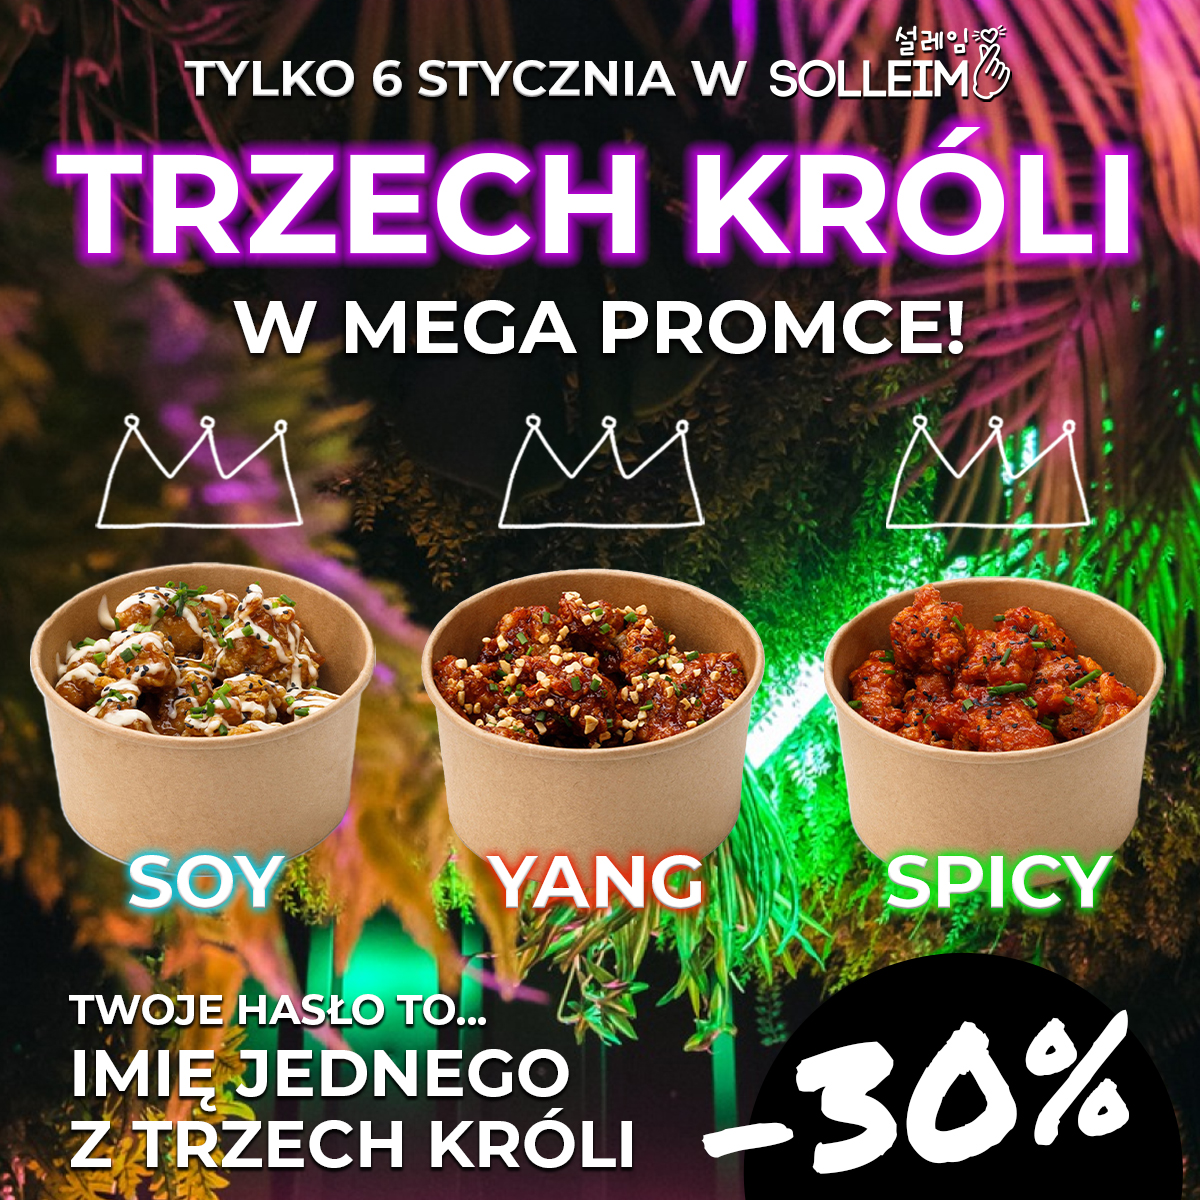 Gdzie zjeść we Wrocławiu? W sobotę 6 grudnia promocja w lokalach Solleim. -30% na KFC, czyli Korean Fried Chicken Soy, Yang i Spicy. Z hasłem, którym jest imię jednego z Trzech Króli.